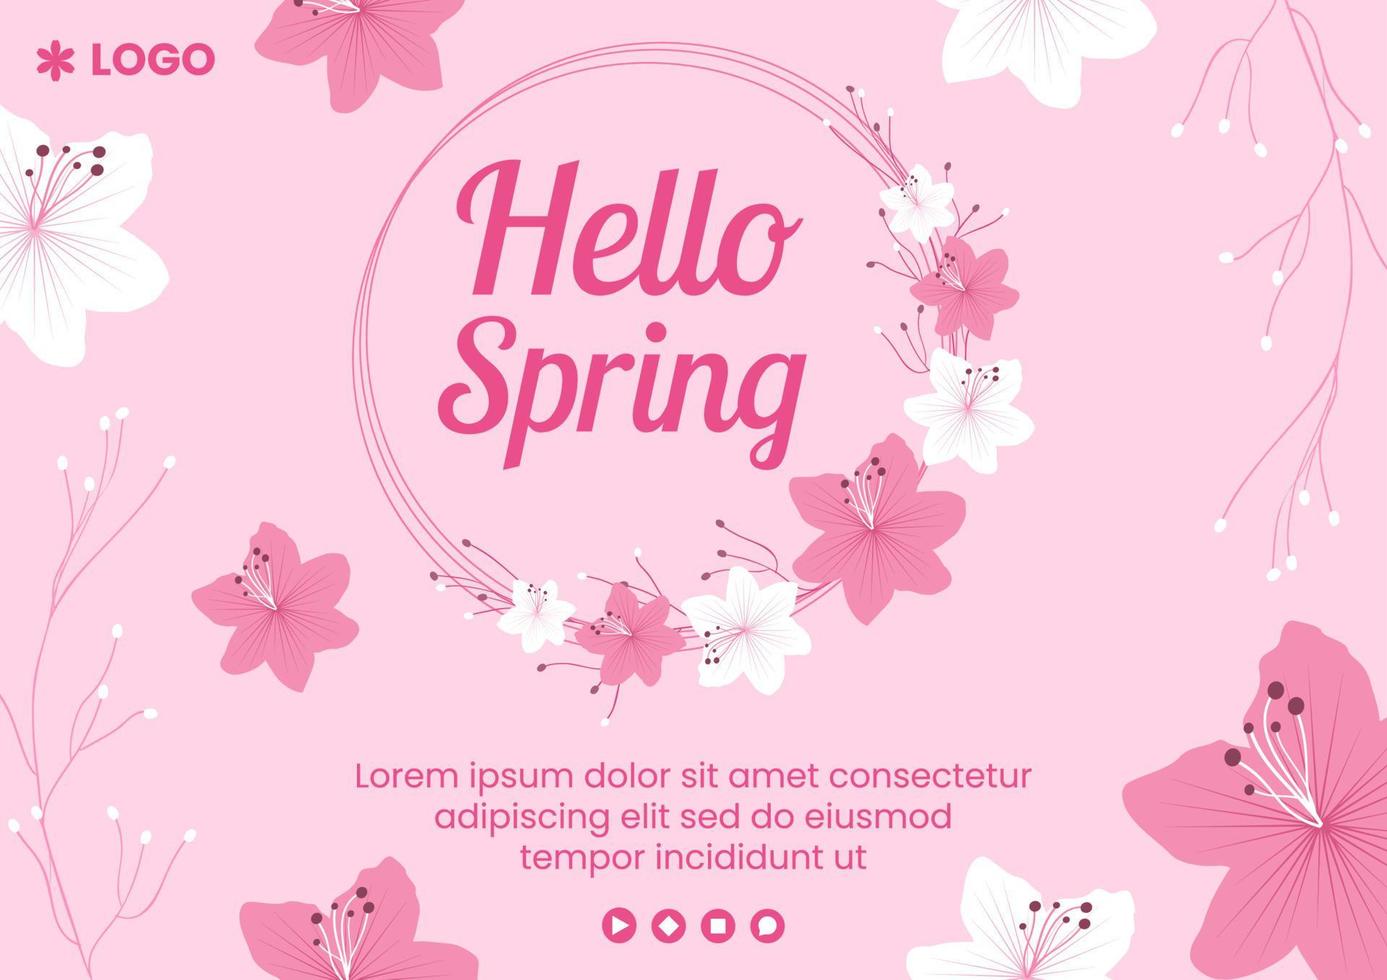 printemps avec fleur sakura fleurs brochure modèle illustration plate modifiable de fond carré pour les médias sociaux ou la carte de voeux vecteur